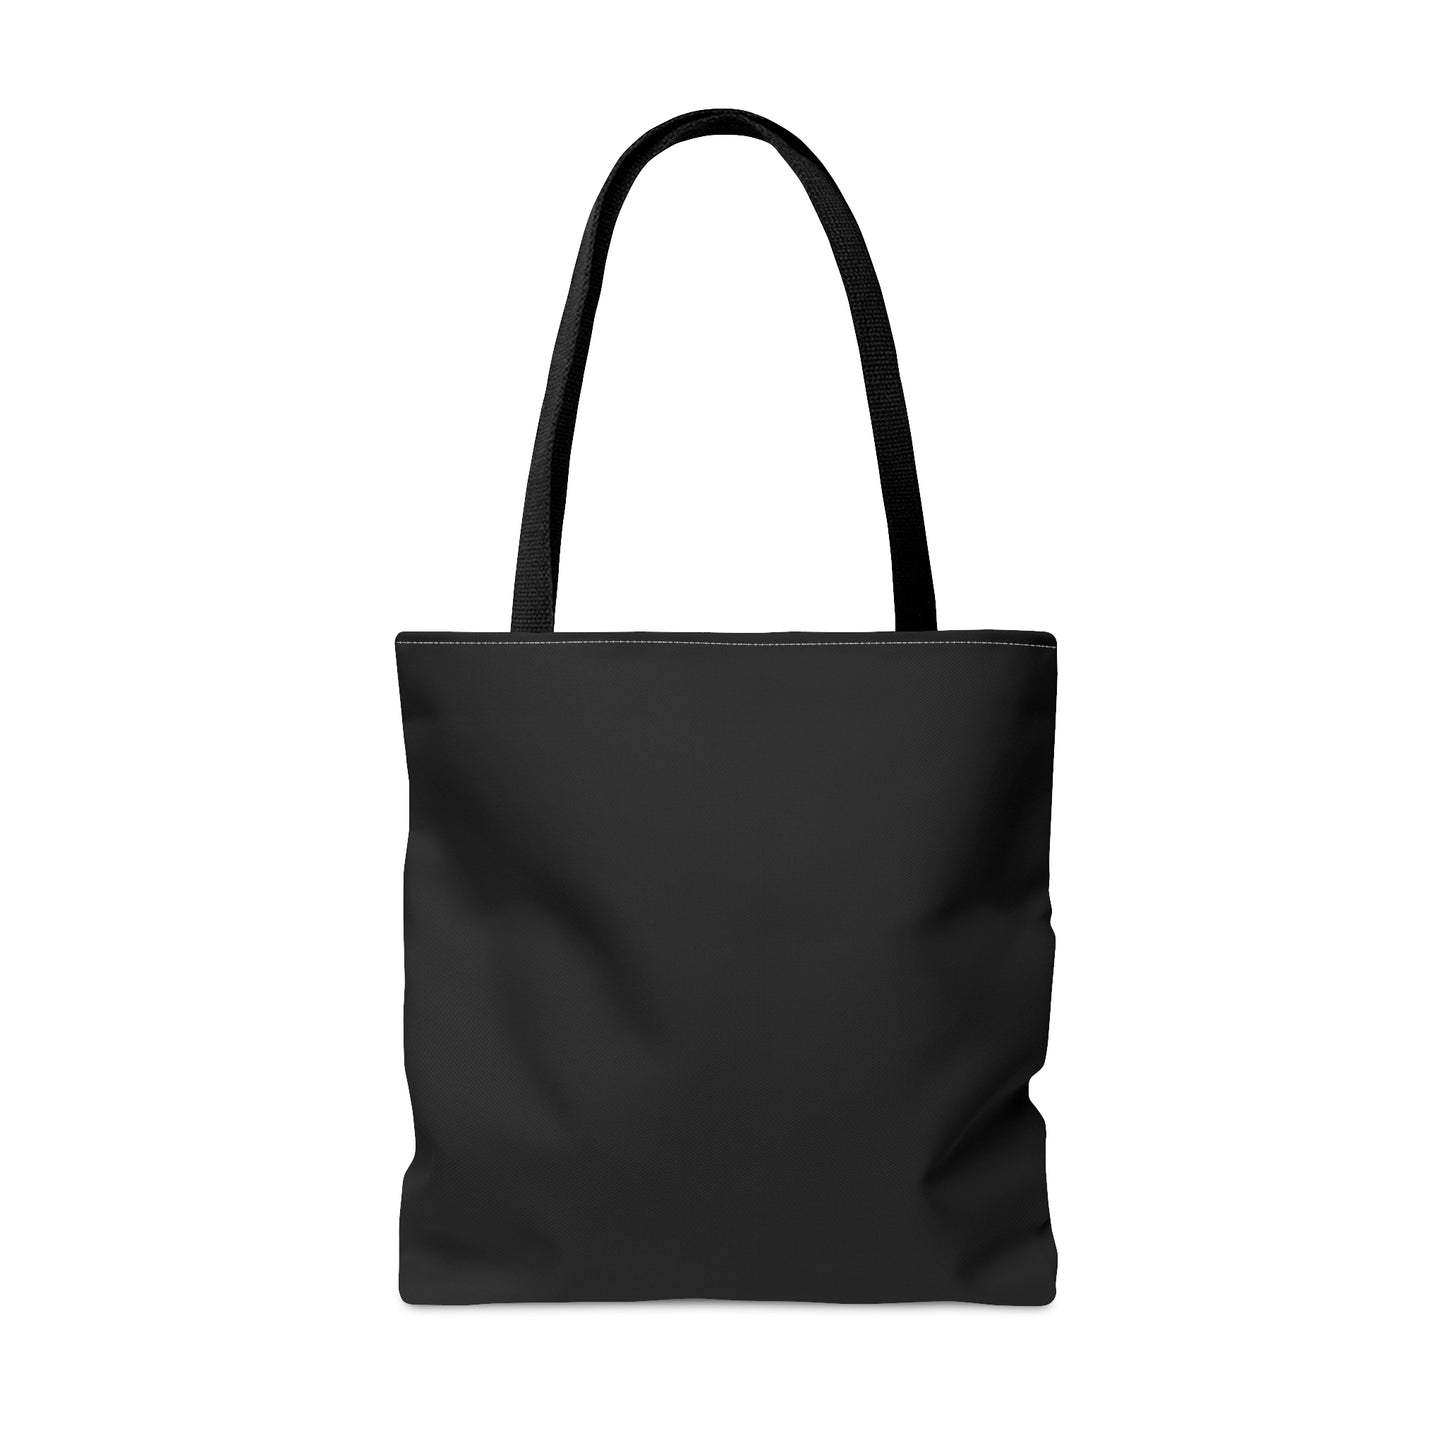 Santa Clara Tote Bag (Black)